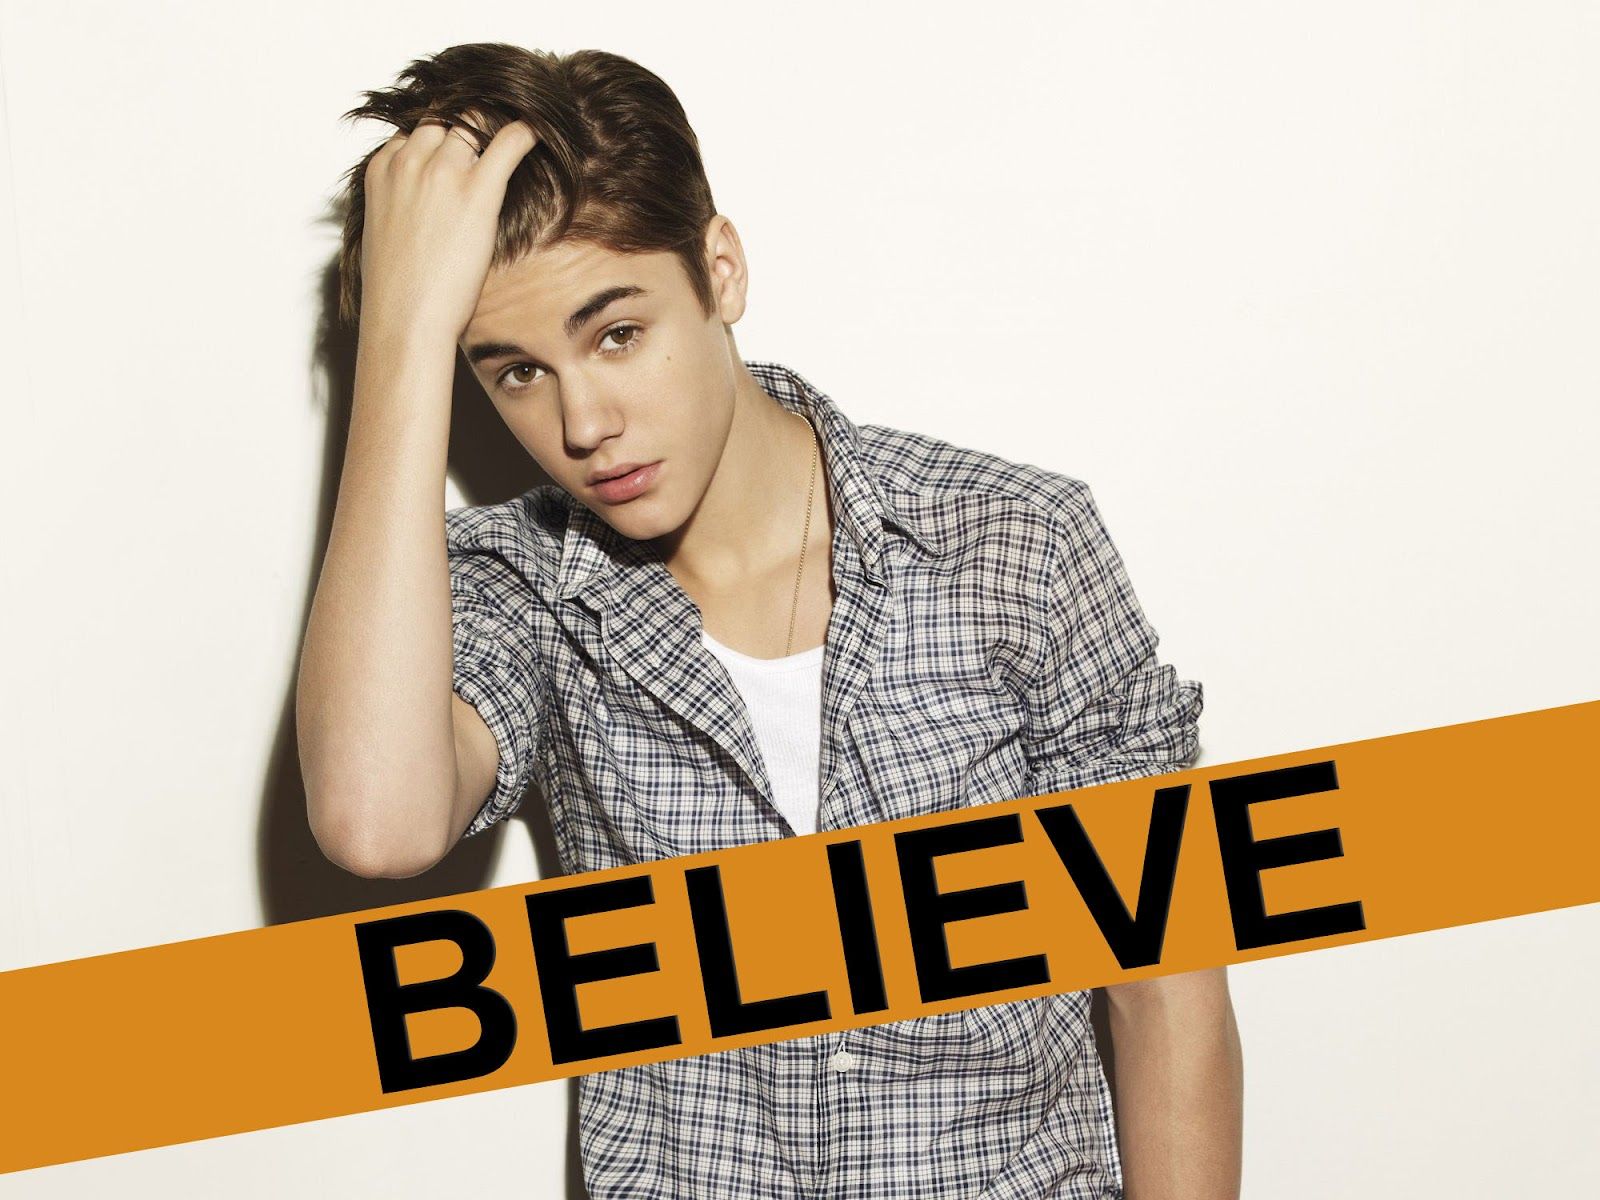 Justin Bieber Believe Wallpapers - Wallpaper Cave